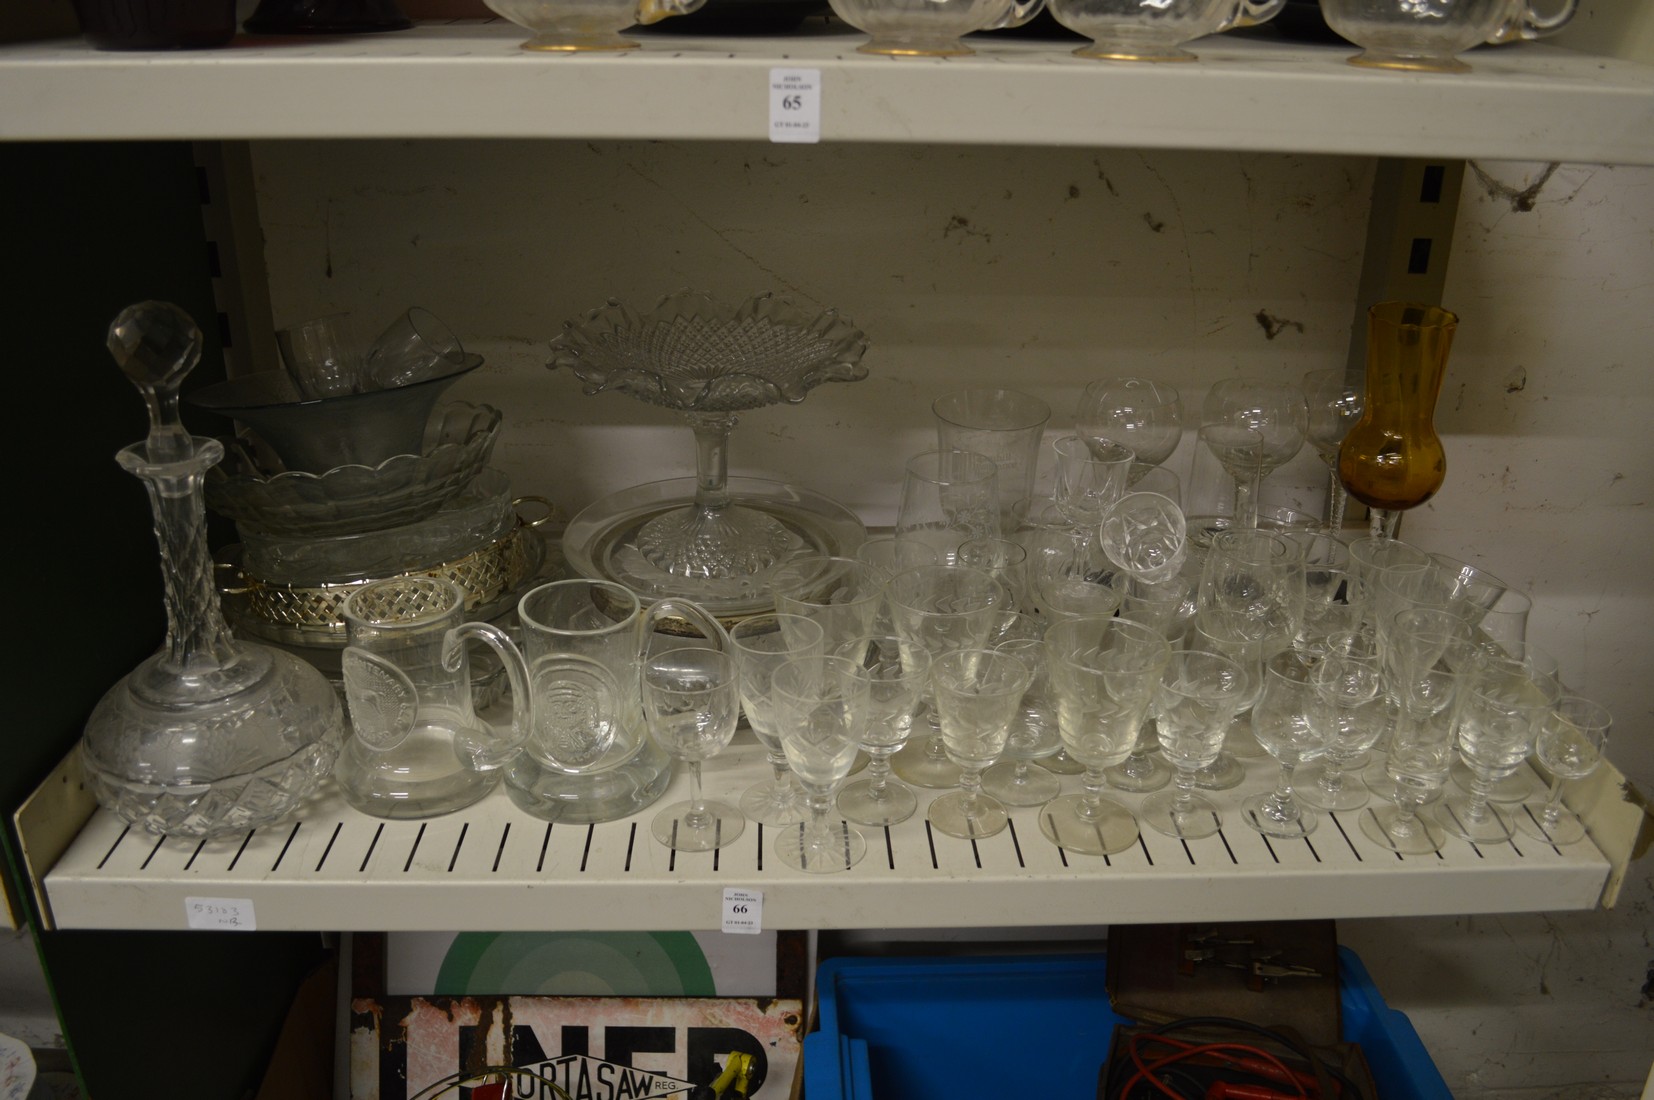 A quantity of glassware.